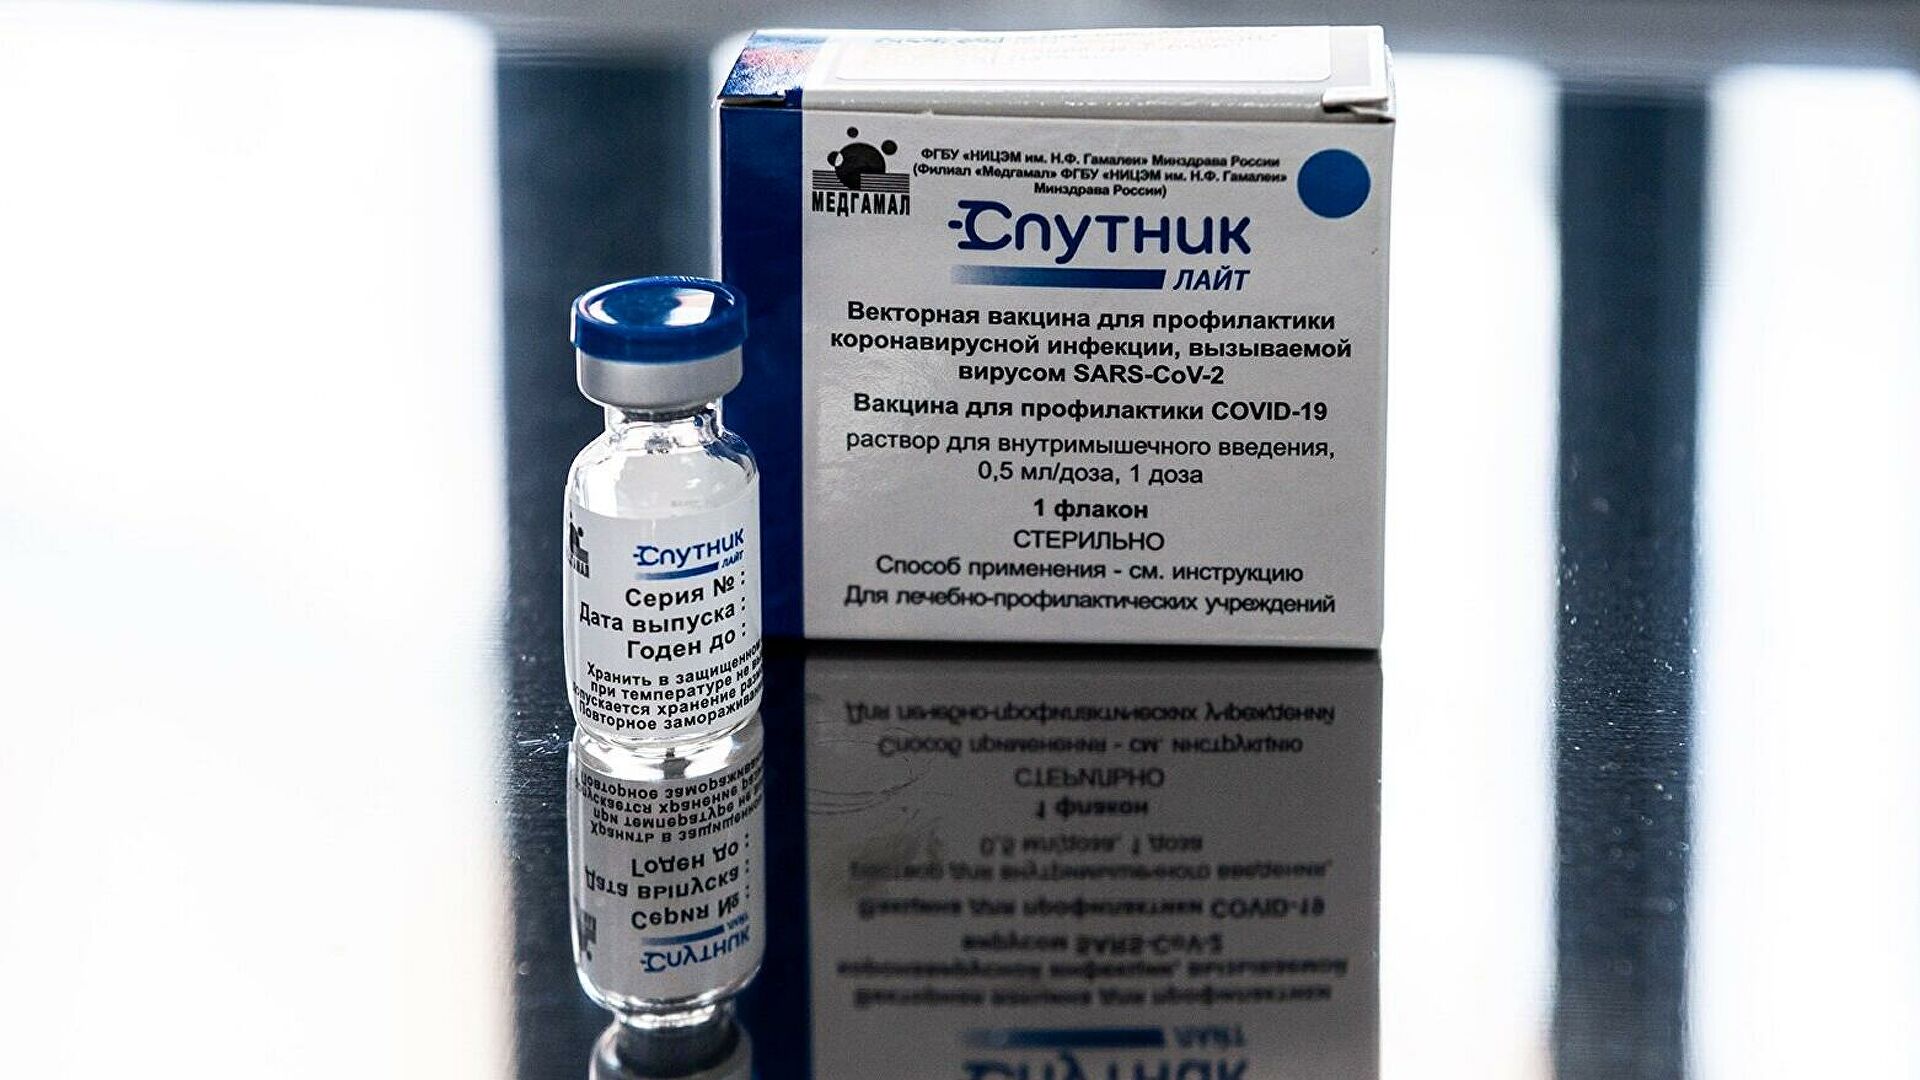 Тысячу доз вакцины «Спутник Лайт» доставили в Алданский район Якутии